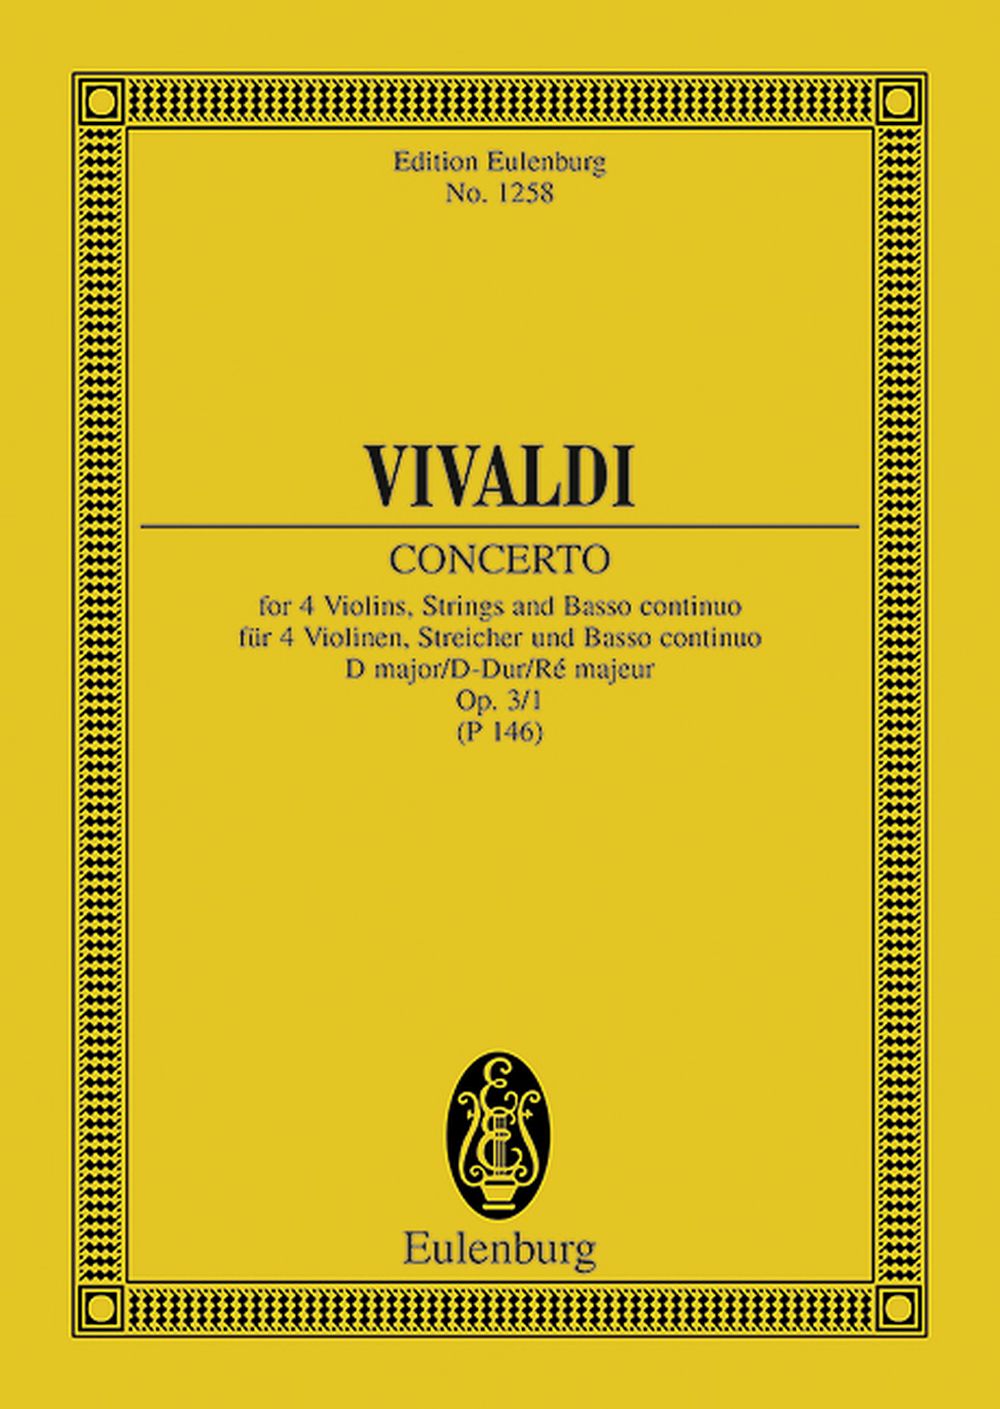 Antonio Vivaldi: L'Estro Armonico Op. 3 No. 1 RV 549 / PV 146: String Ensemble: